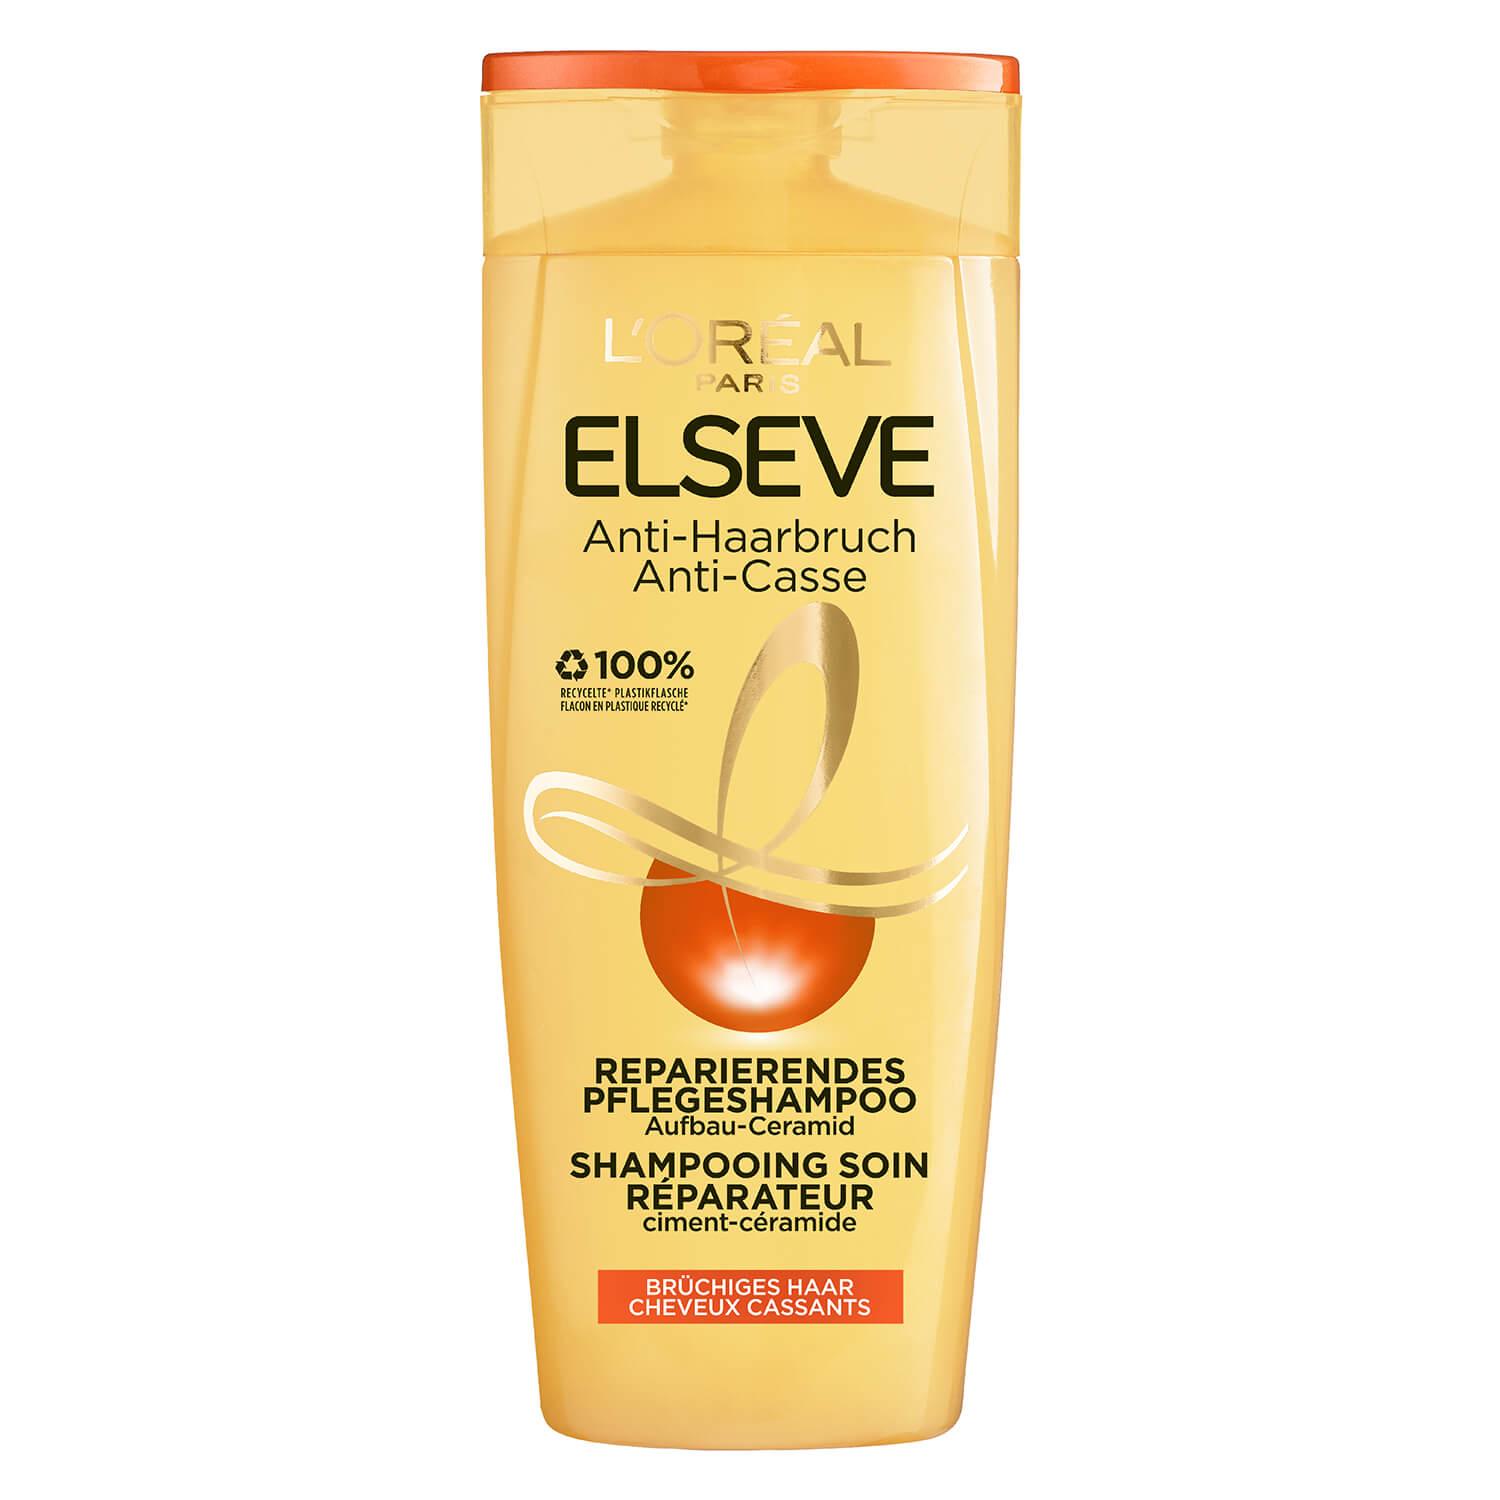 LOréal Elseve Haircare - Anti-Haarbruch Shampoo